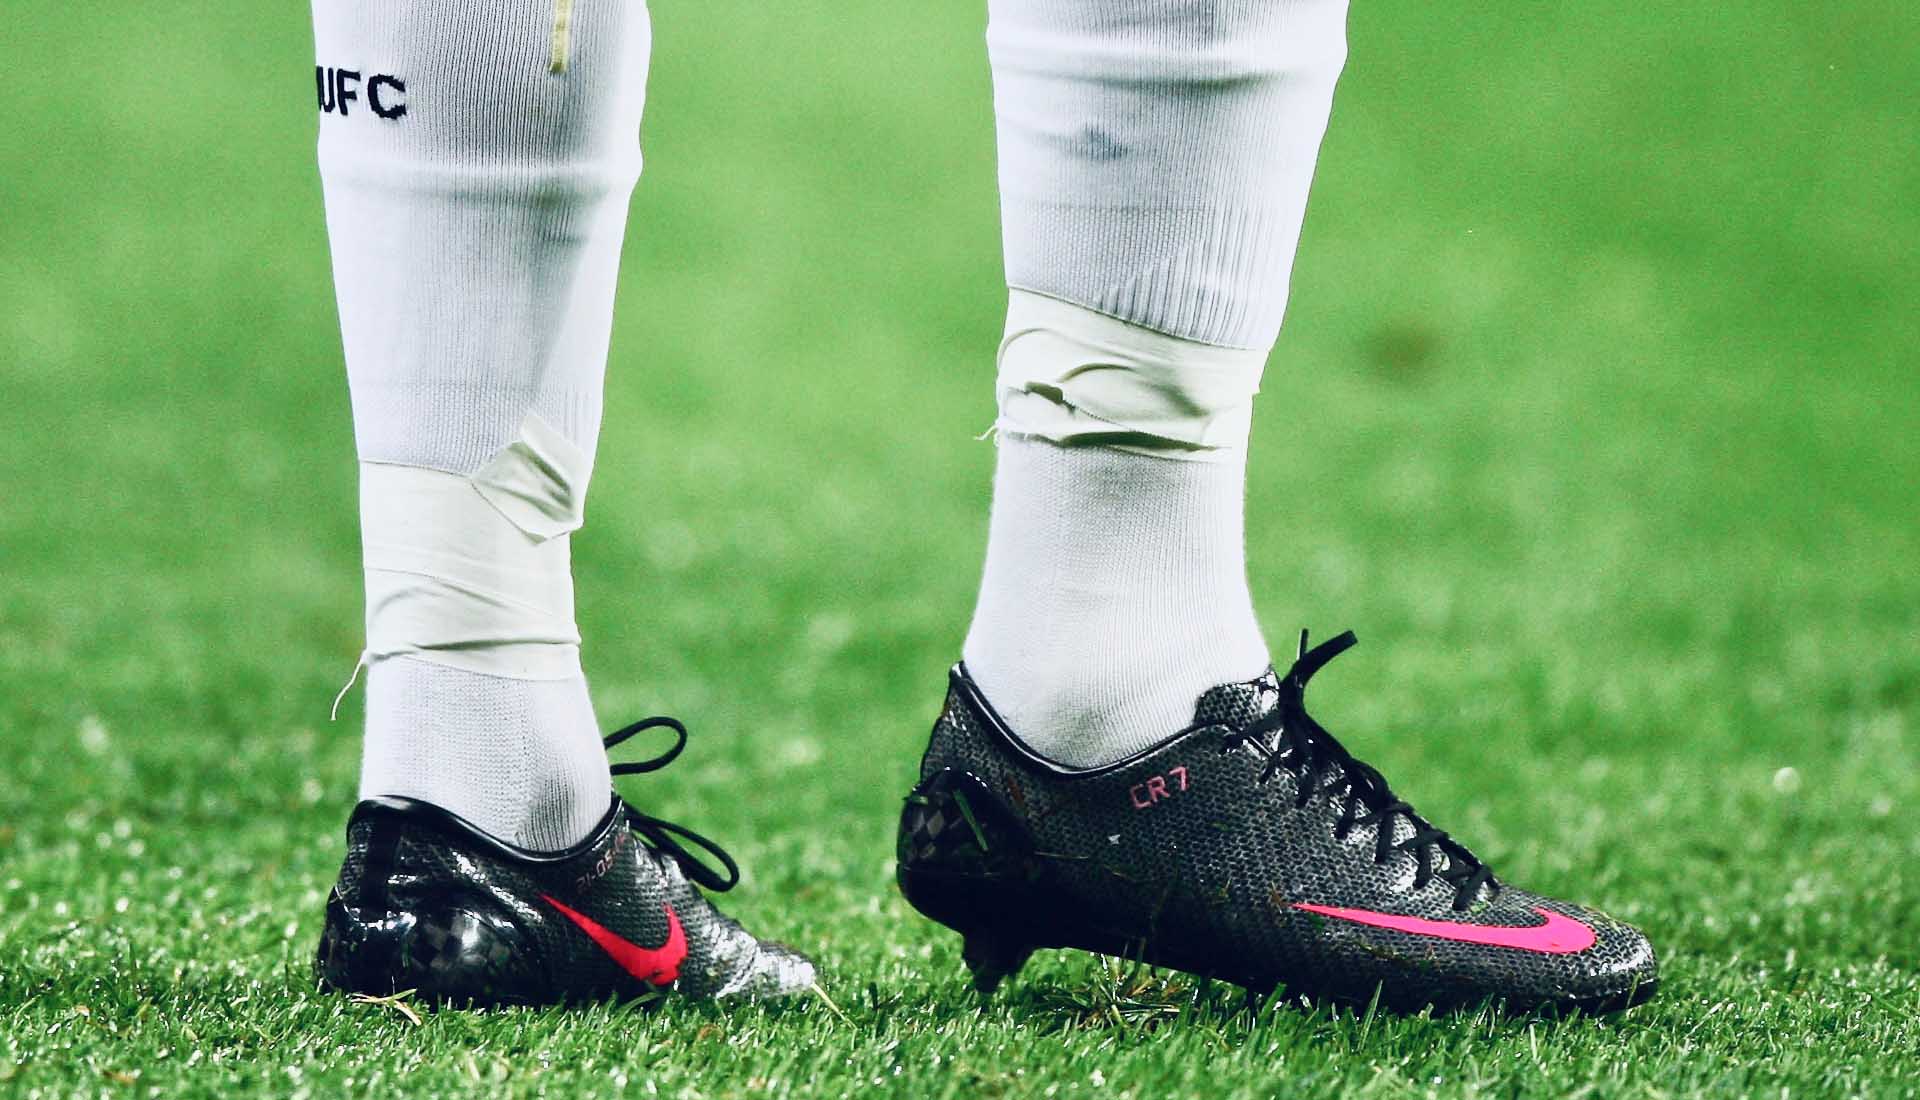 Giày đá bóng siêu nhẹ Nike Mercurial Vapor IV SL trên chân Ronaldo CR7